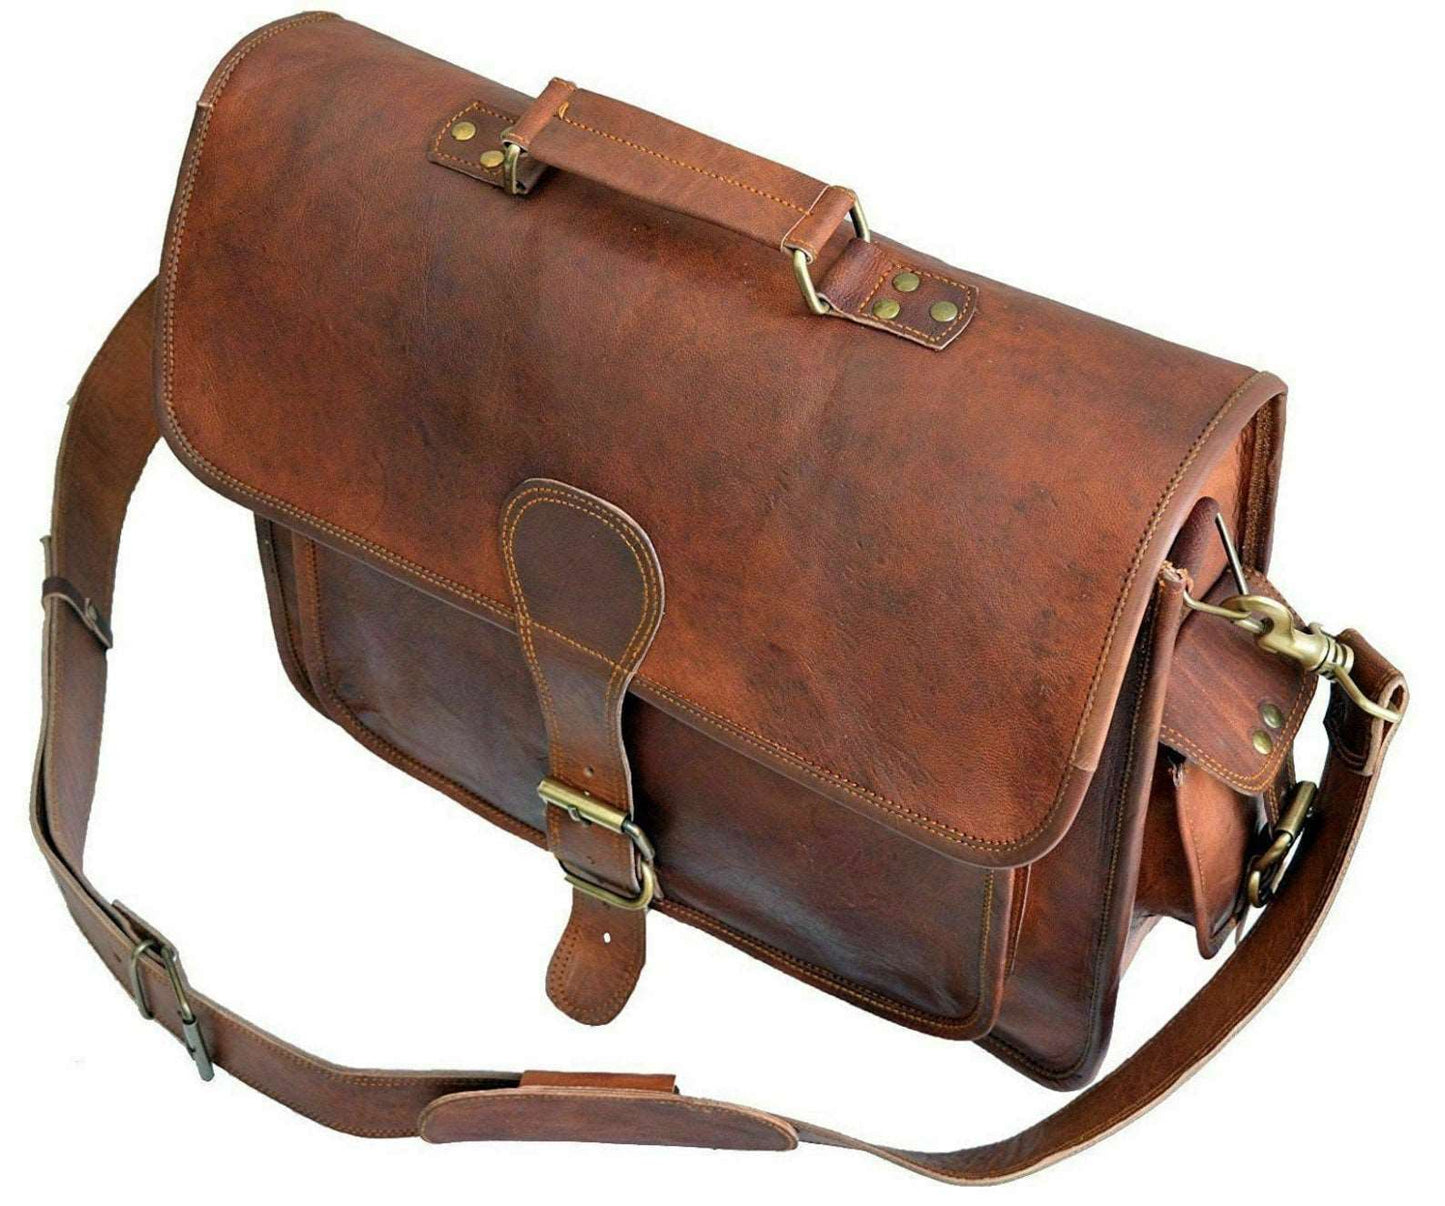 15” Mens Goat Leather Vintage Brown Messenger Bag Shoulder Laptop Bag Briefcase Unisex Handmade Rustic